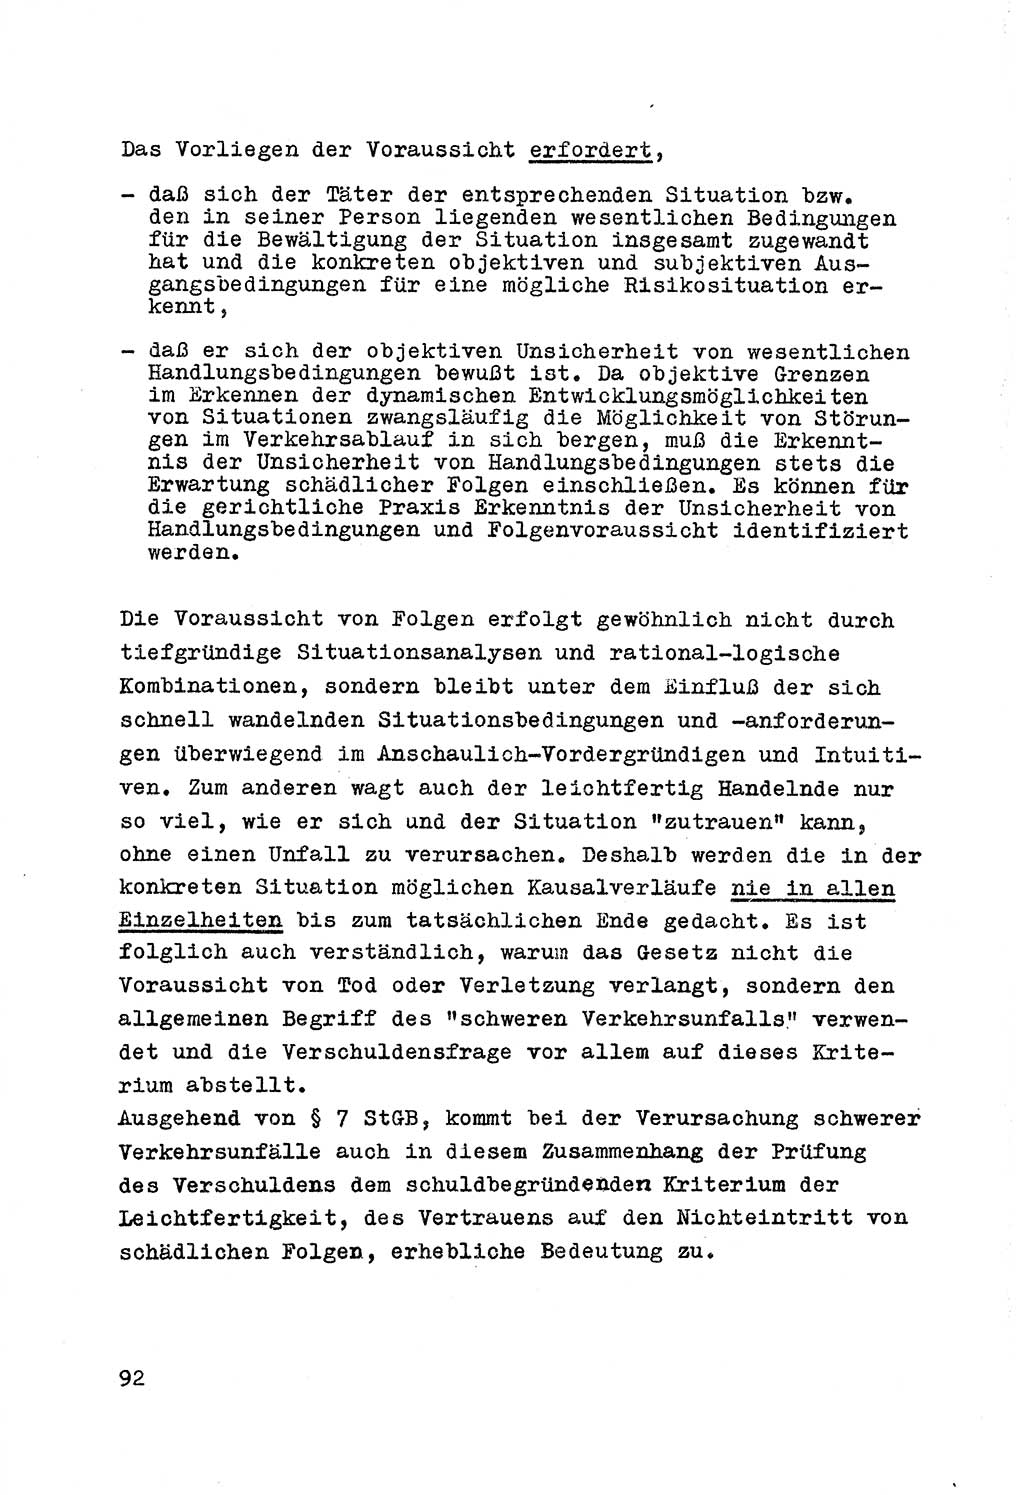 Strafrecht der DDR (Deutsche Demokratische Republik), Besonderer Teil, Lehrmaterial, Heft 7 1970, Seite 92 (Strafr. DDR BT Lehrmat. H. 7 1970, S. 92)